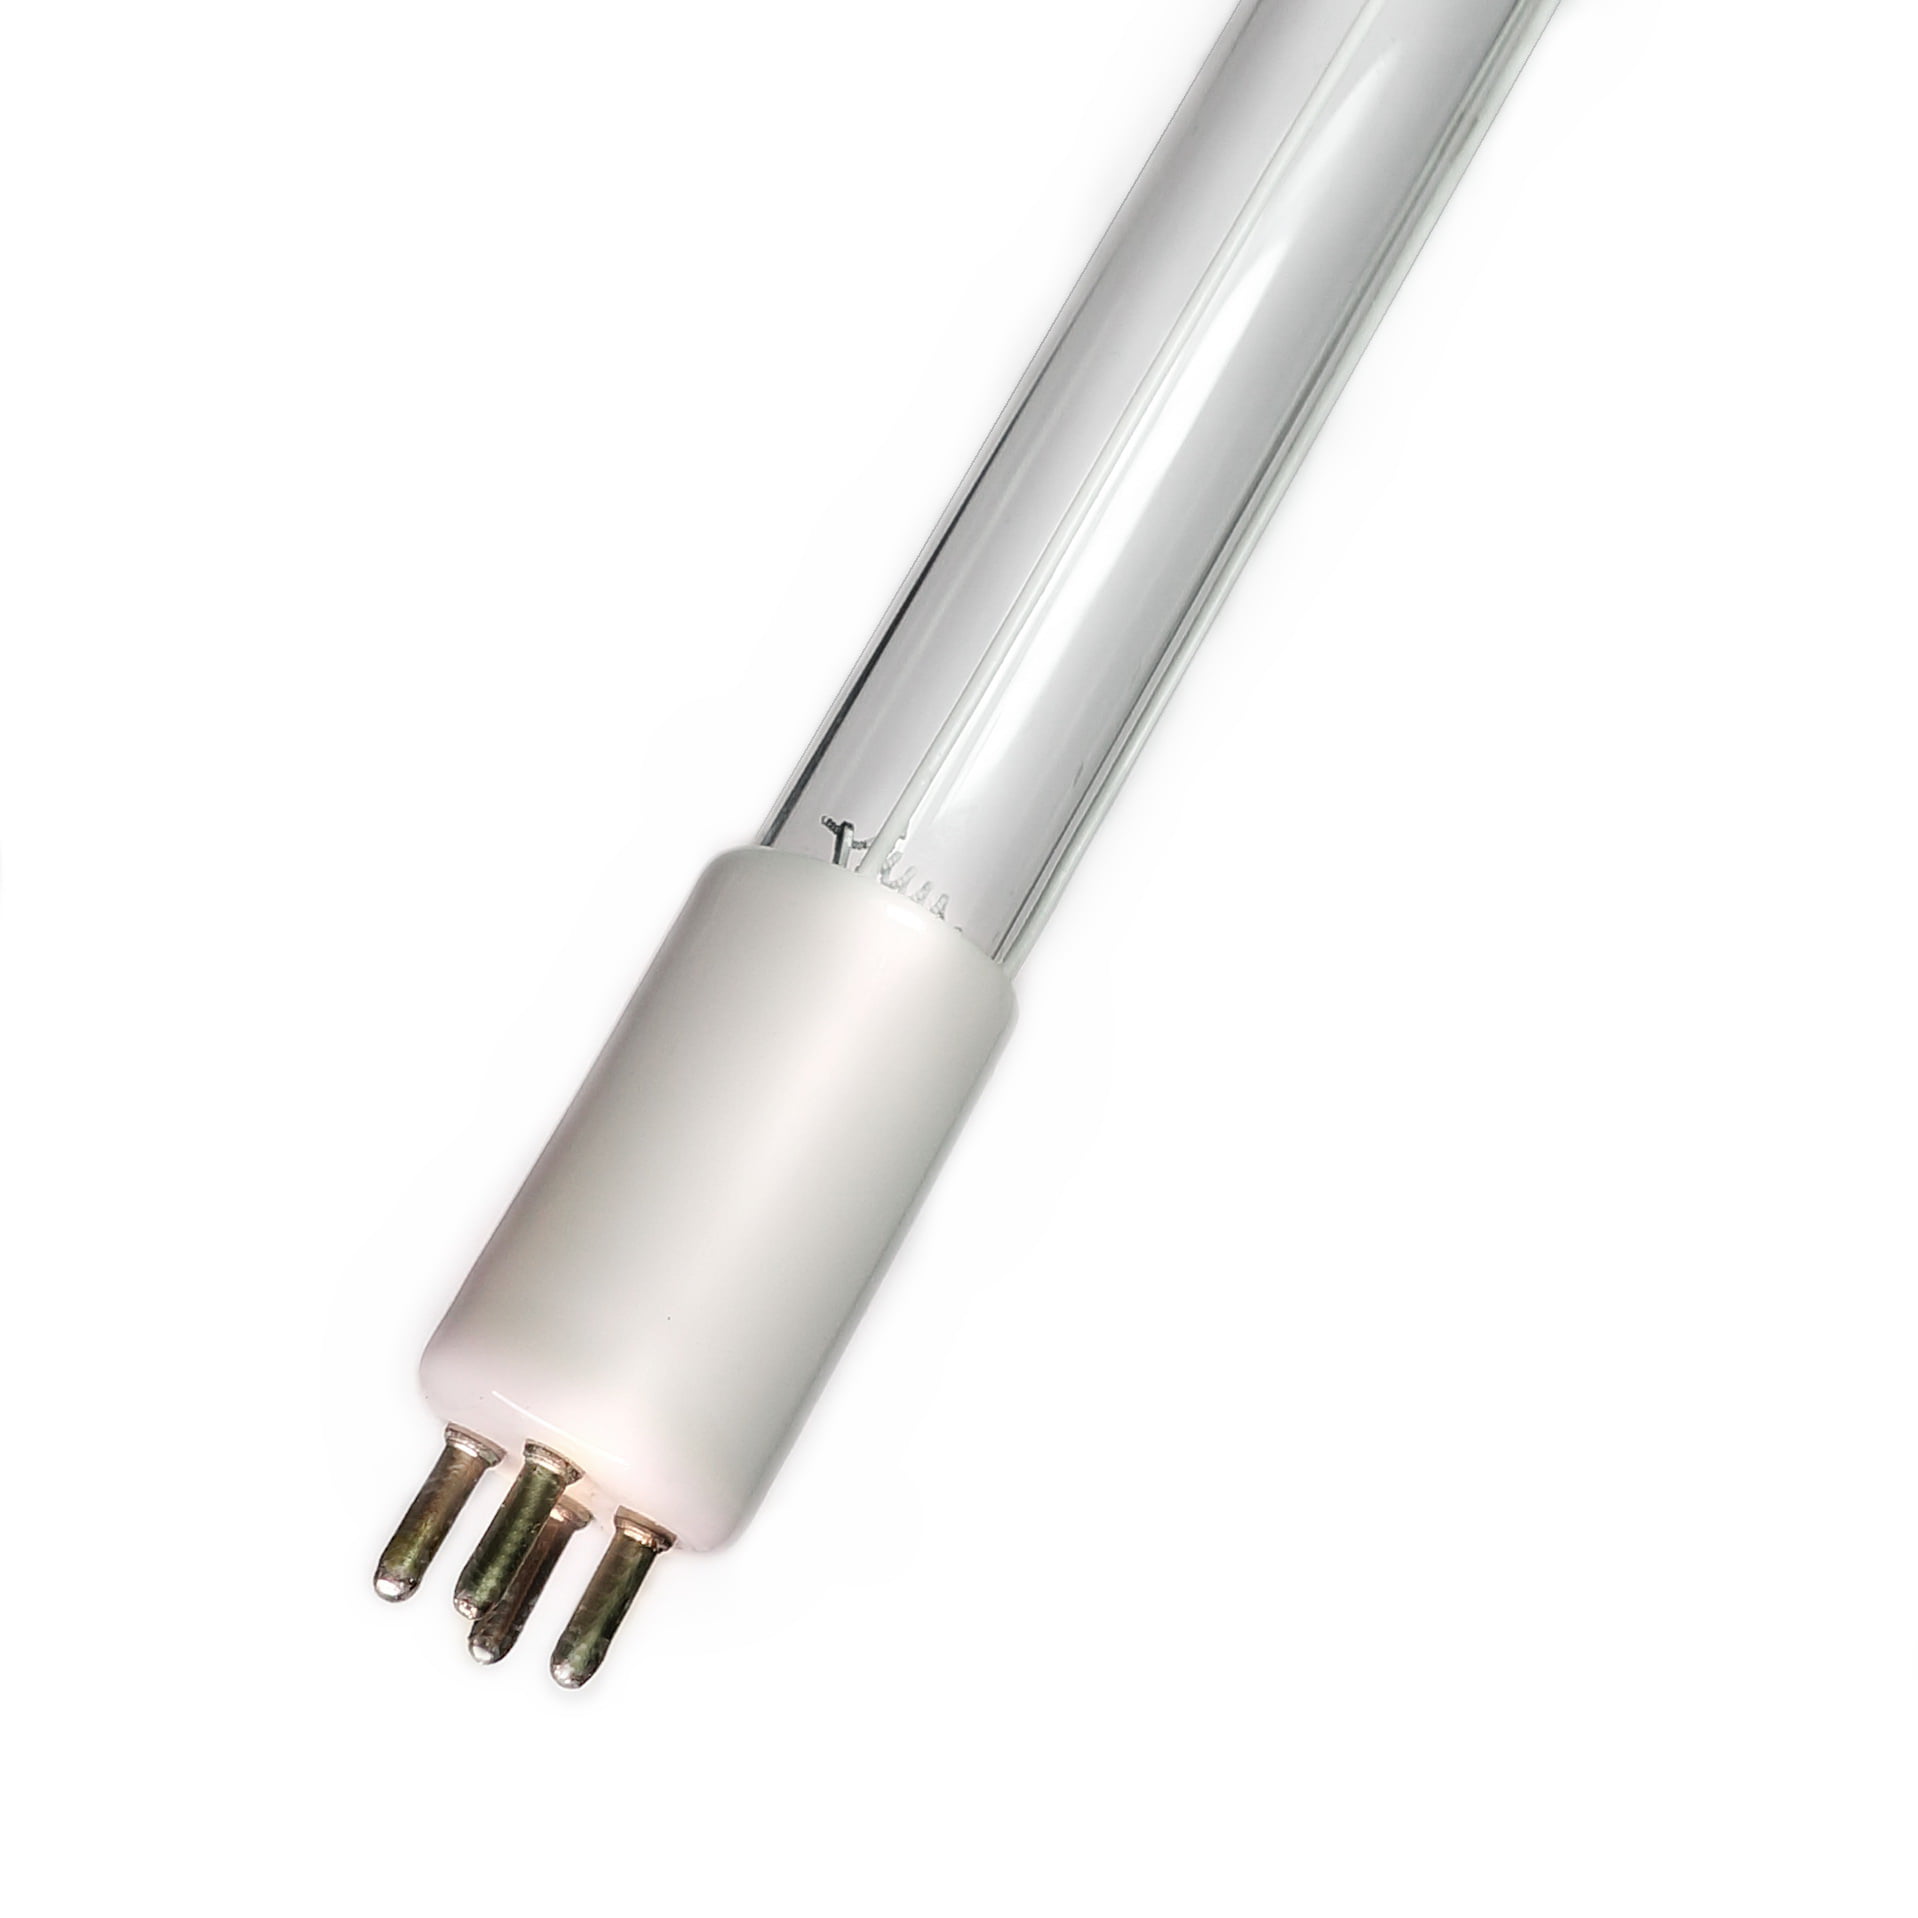 75W Range Hood Bulb for Dacor #62351#92348 Light Spectrum Enterprises Inc 